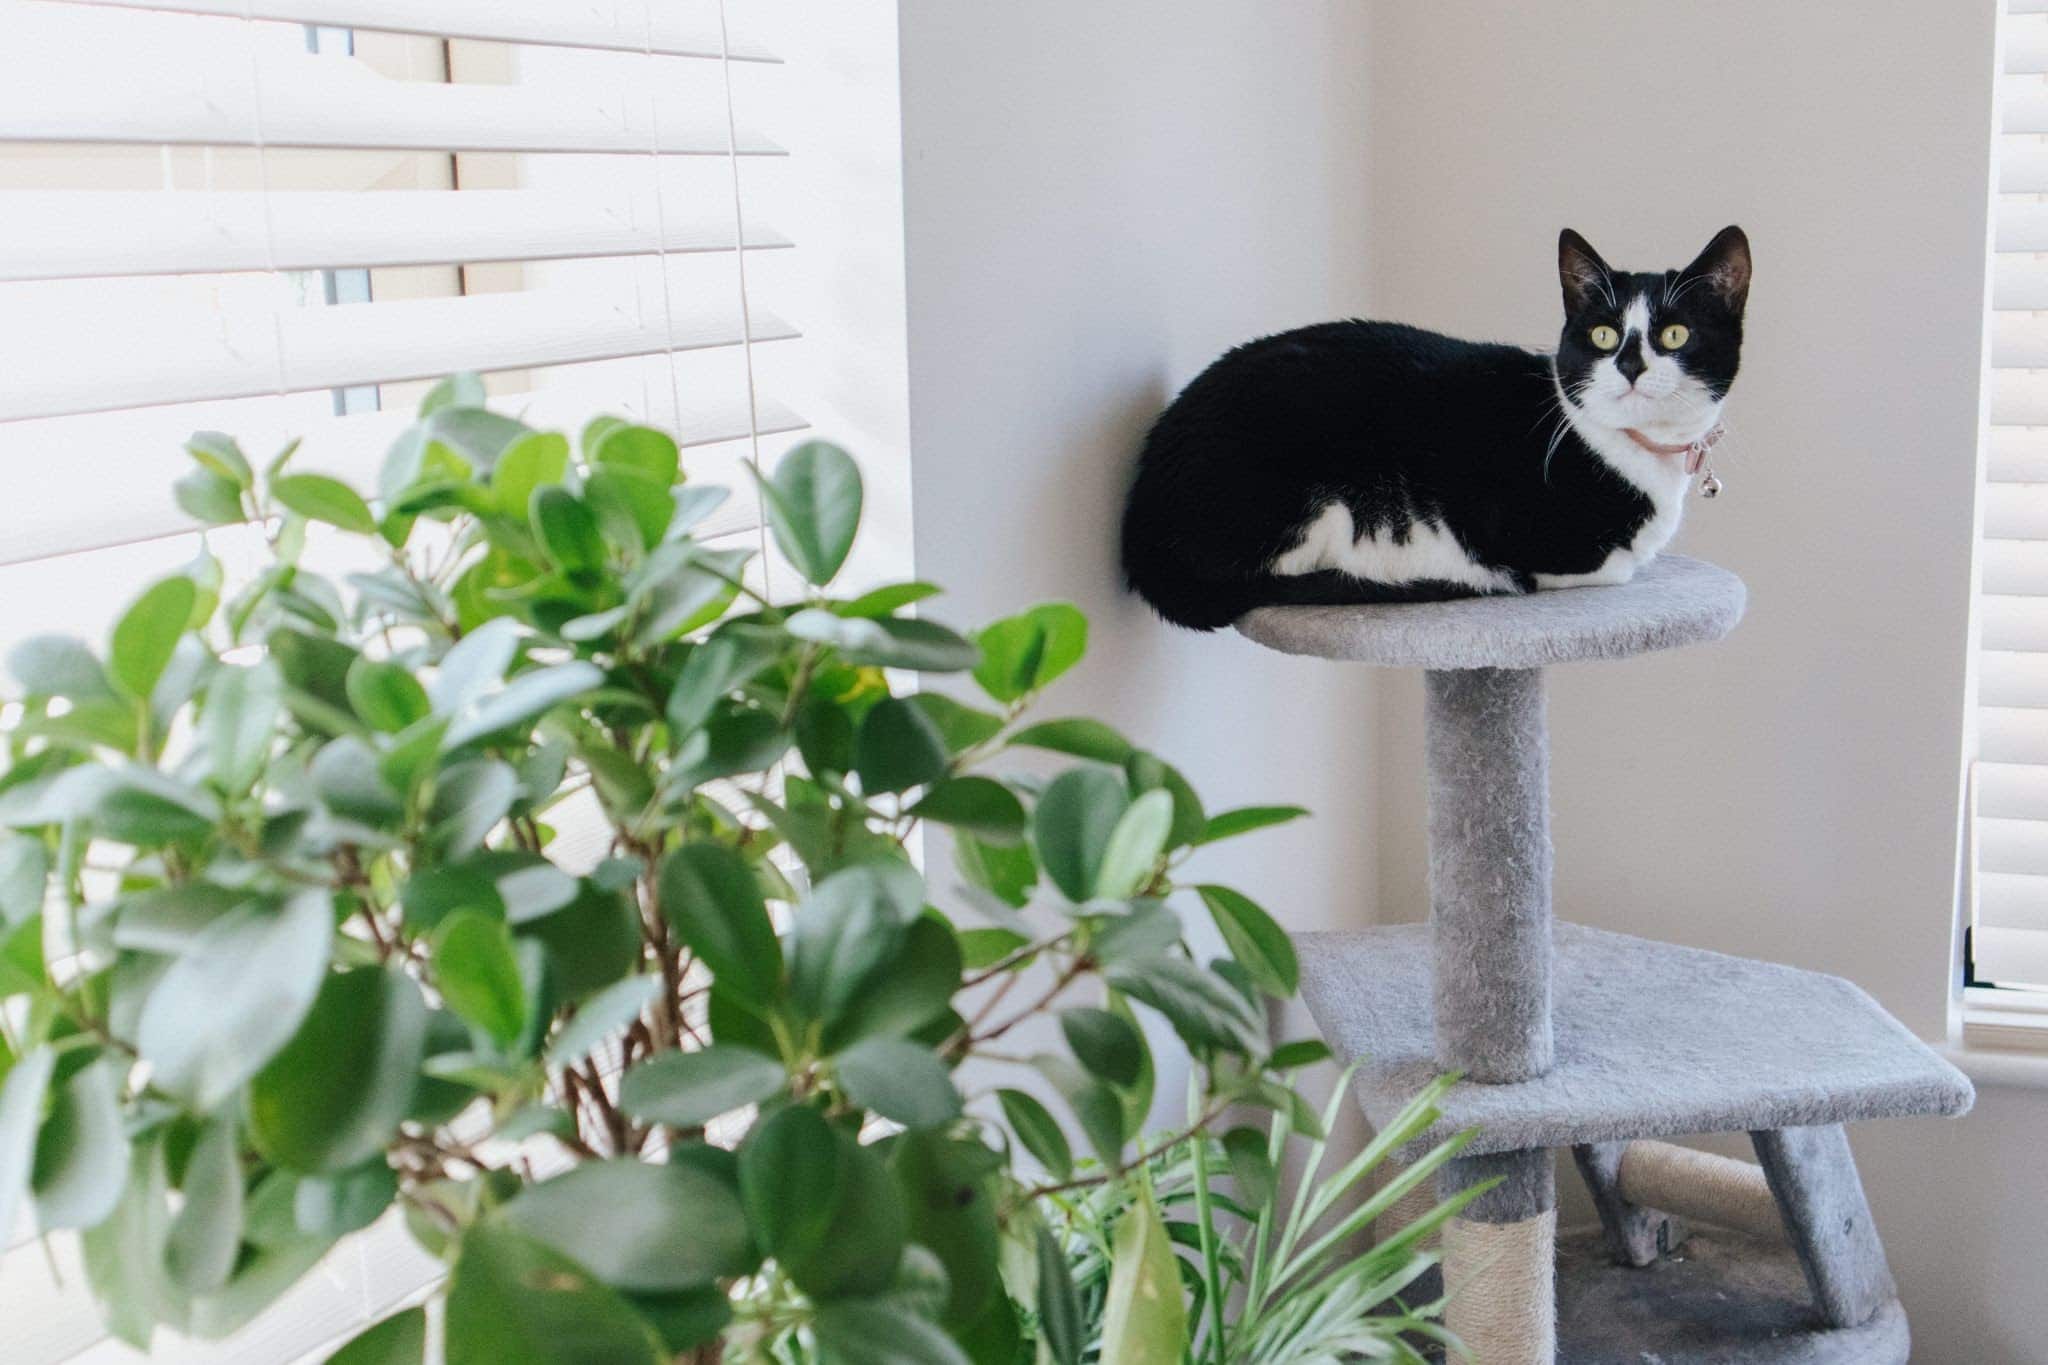 Comment préparer votre appartement pour accueillir des chats d'intérieur ? 8 astuces à connaître